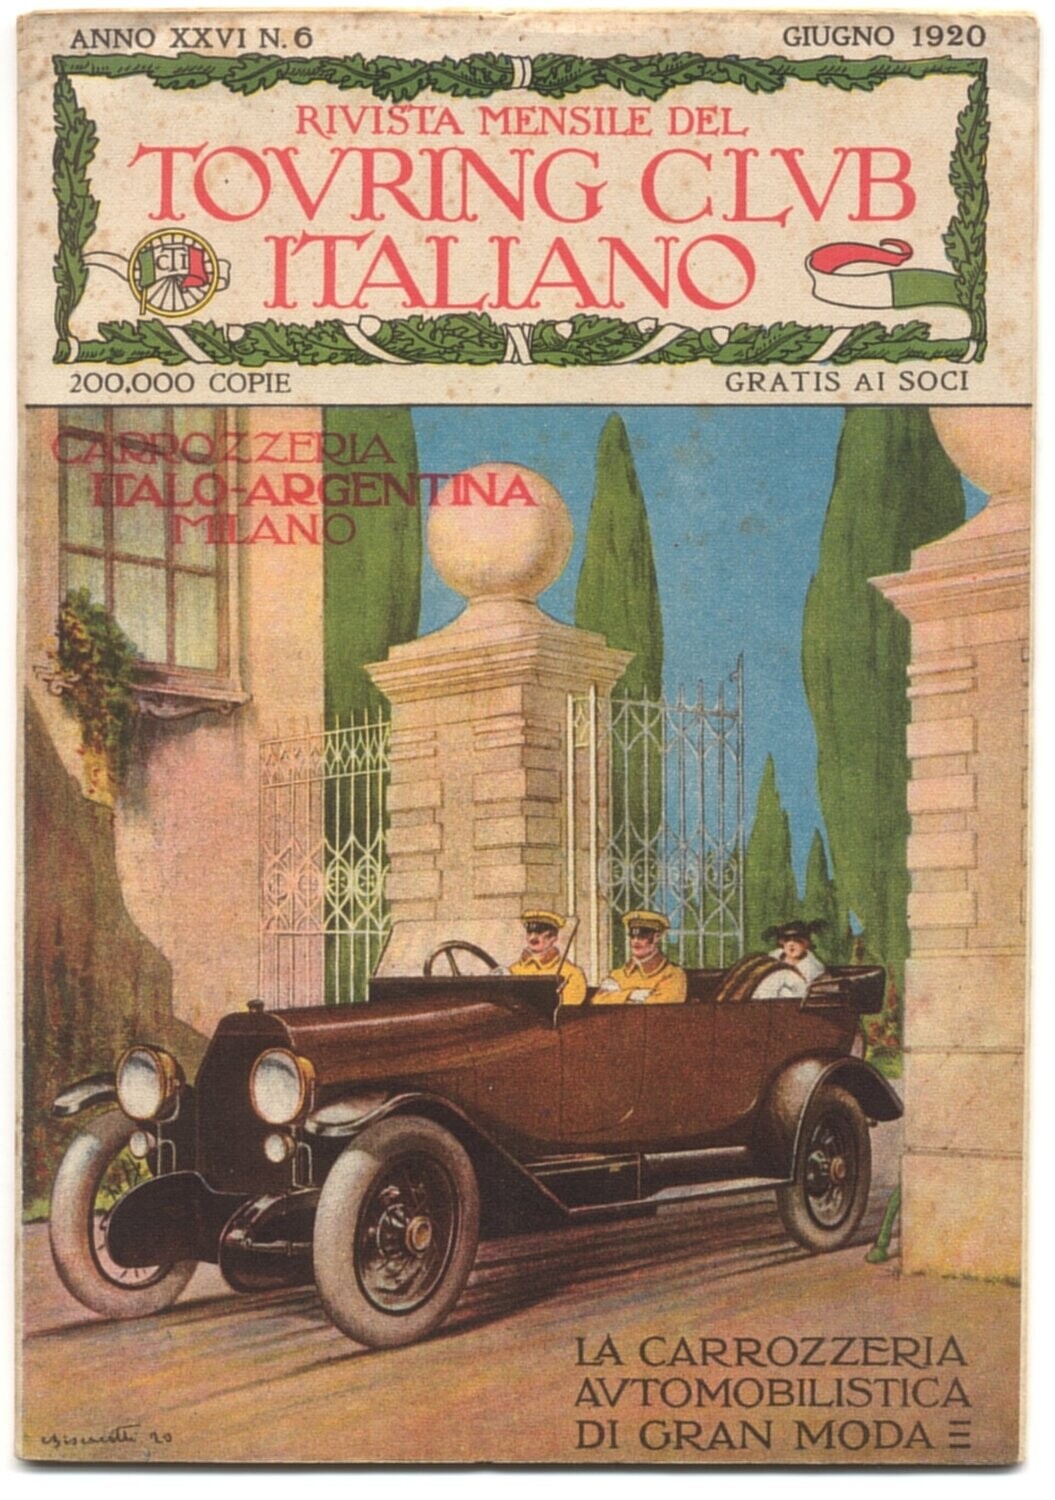 Rivista mensile del touring club italiano Anno XXV N.6 del 1920